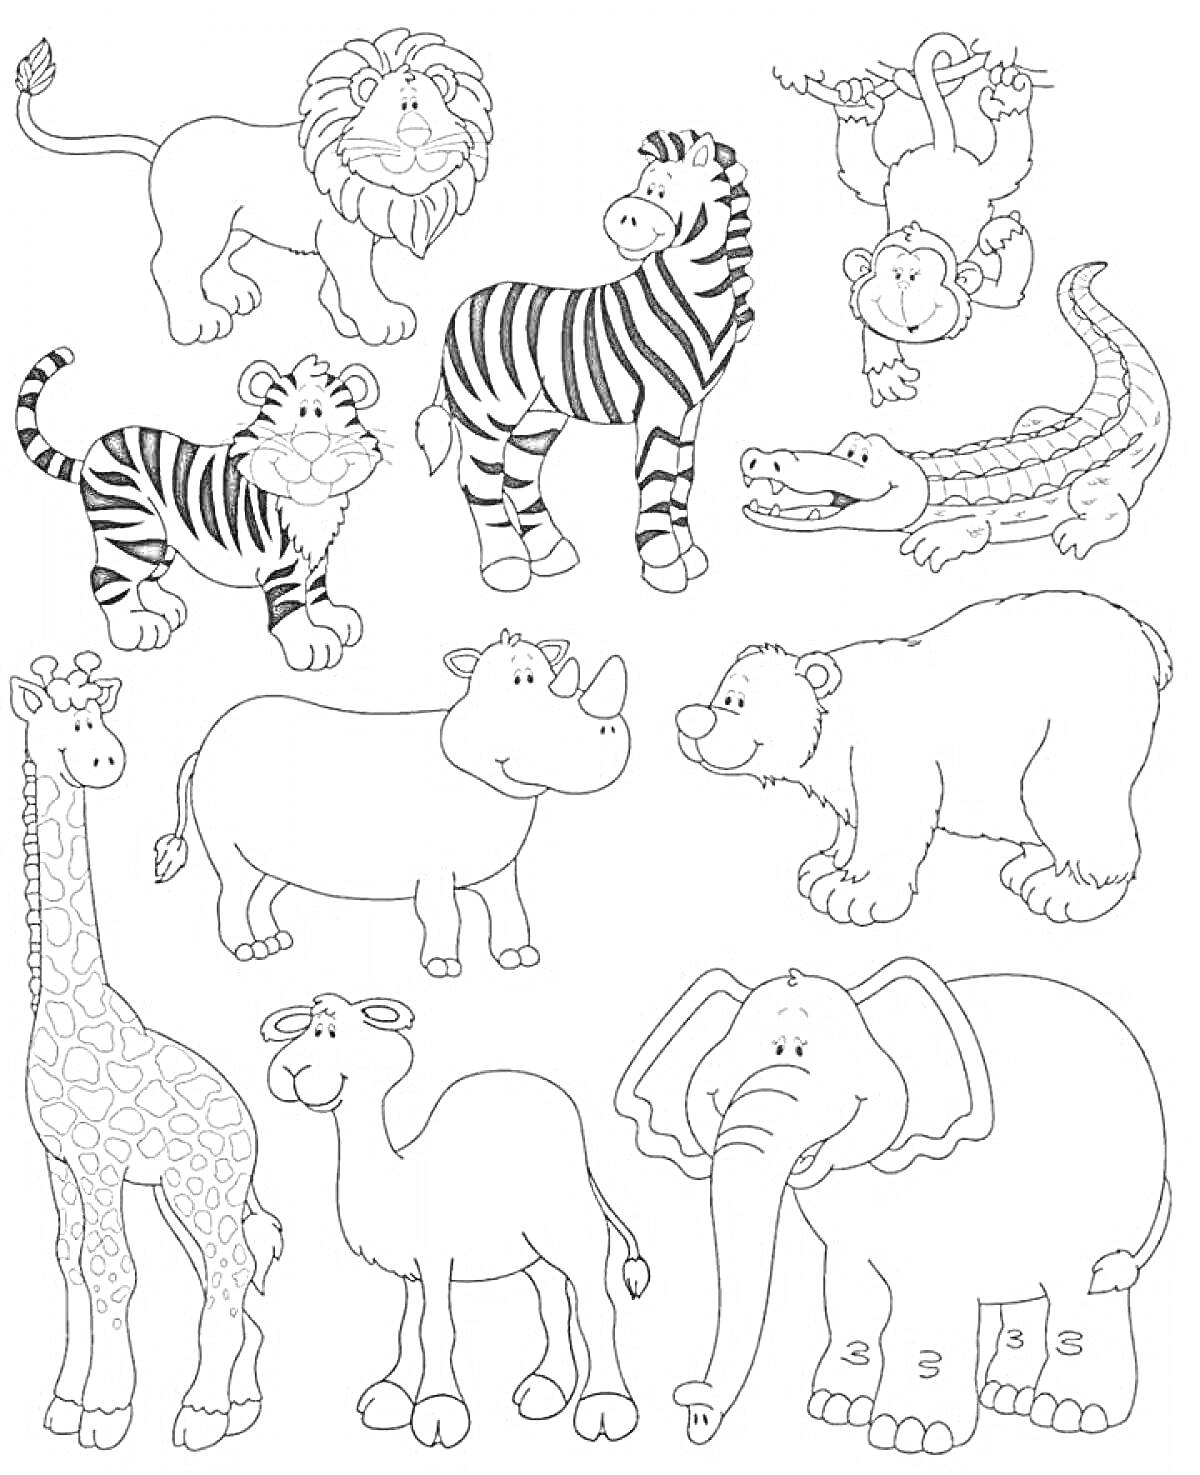 На раскраске изображено: Жаркие страны, Тигр, Носорог, Крокодил, Верблюд, Слон, Белый медведь, Для детей, Животные, Жирафы, Зебры, Обезьяны